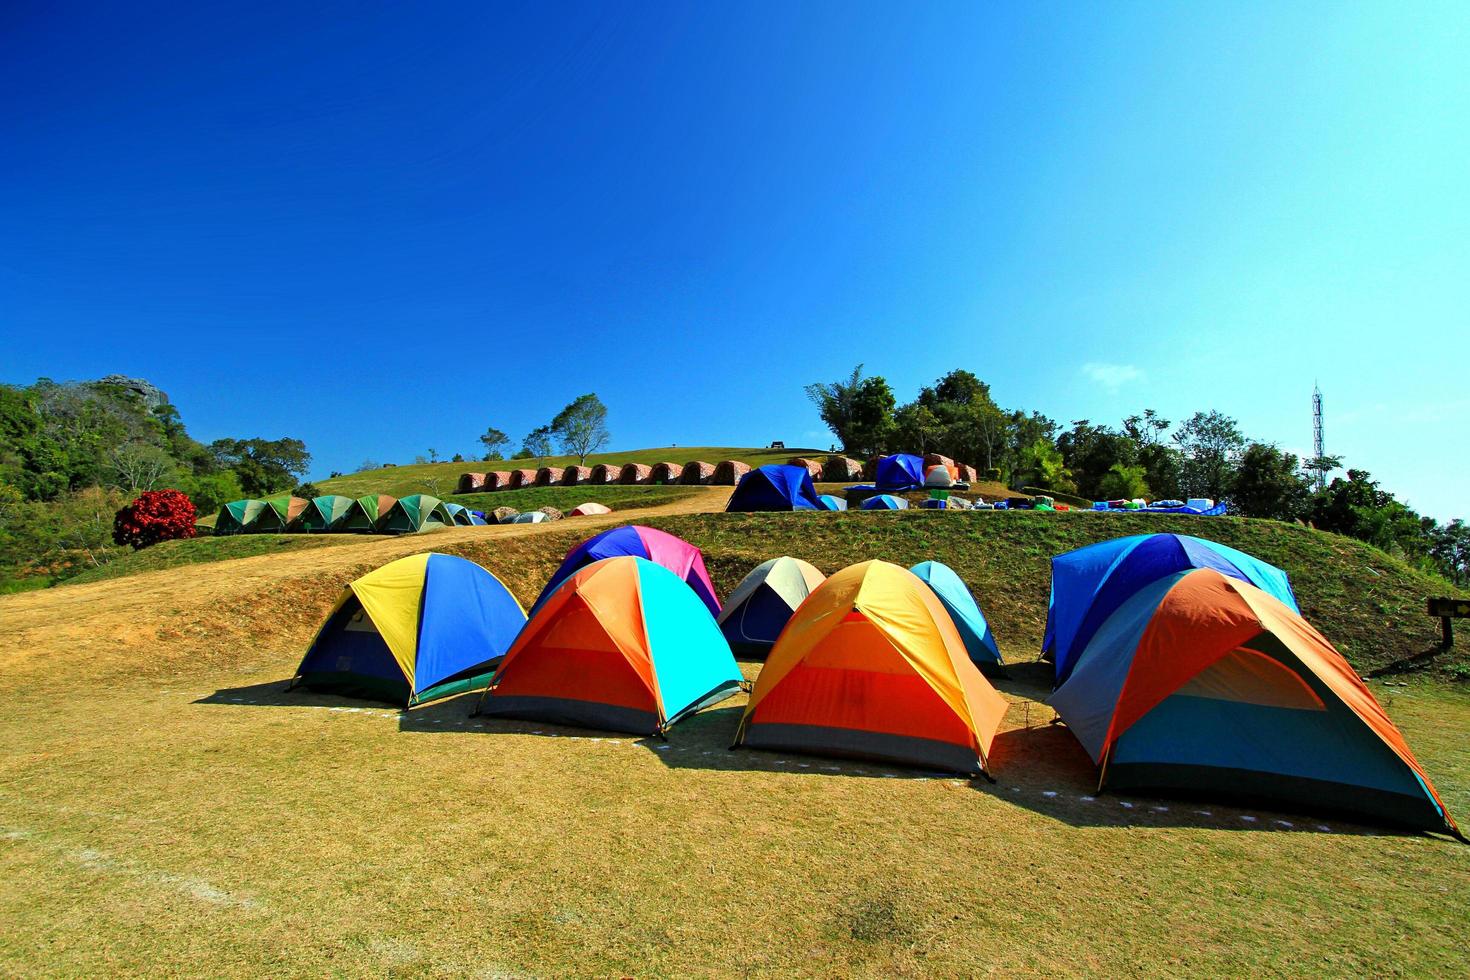 muchas carpas coloridas preparadas para acampar y dormir en el parque nacional sri nan, nan, tailandia. actividad el fin de semana entre natural con fondo de cielo azul claro y aire fresco. foto